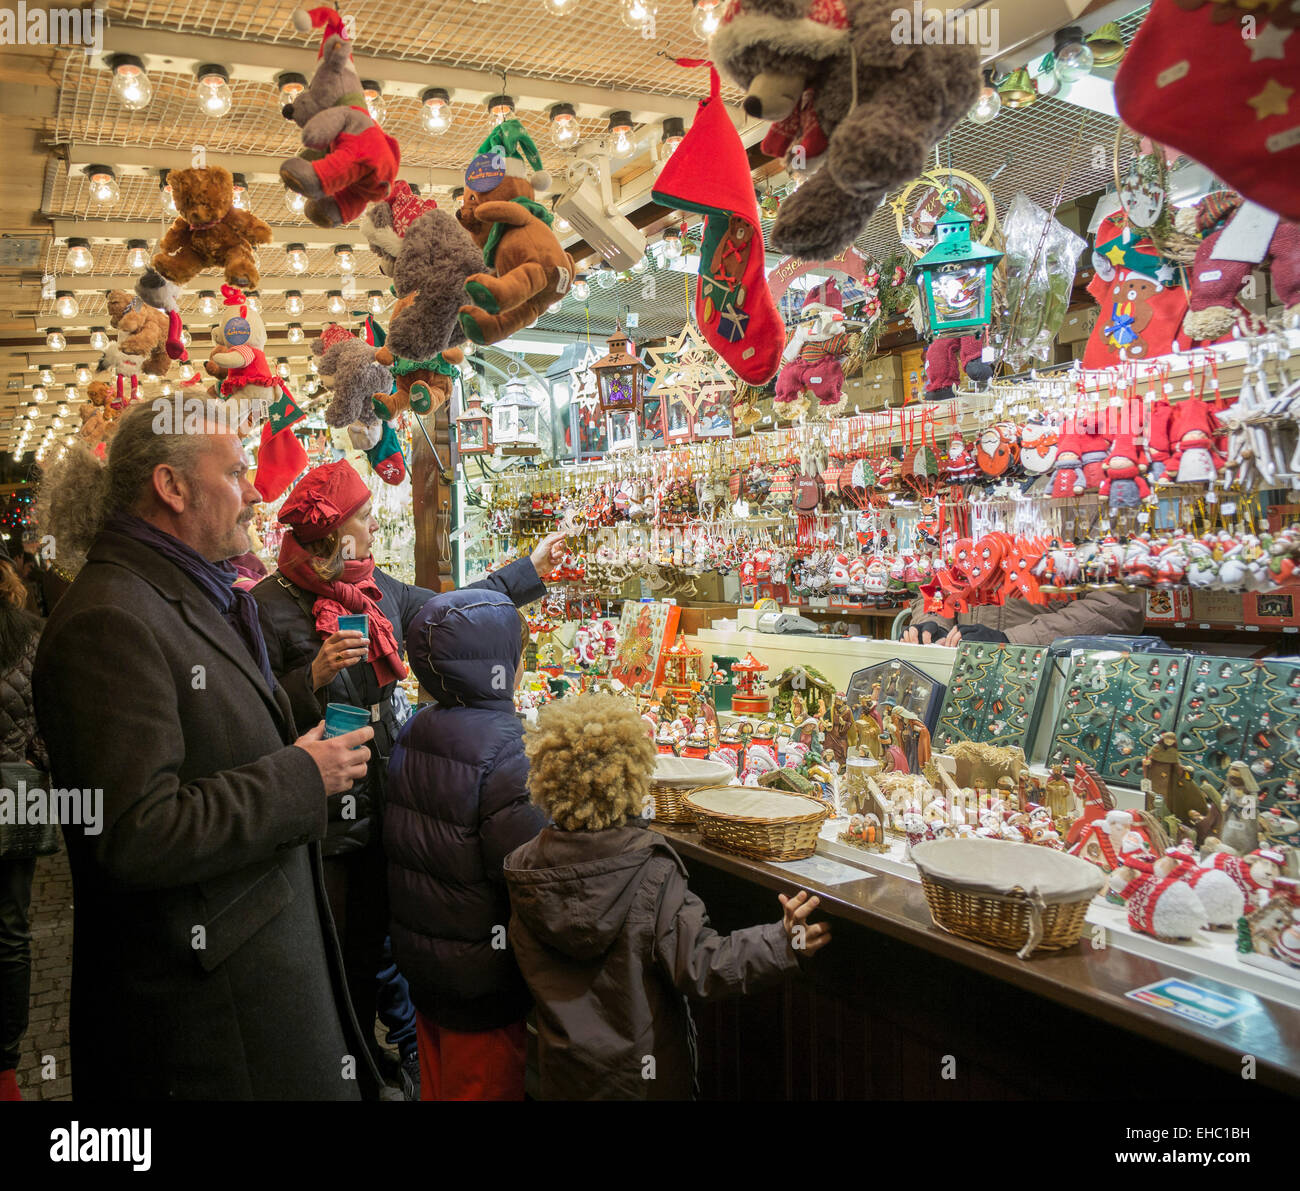 Couple avec 2 enfants shopping pour décoration d'arbre de Noël baubles, 'Christkindelsmärik' Marché de Noël, Strasbourg, Alsace, France, Europe Banque D'Images